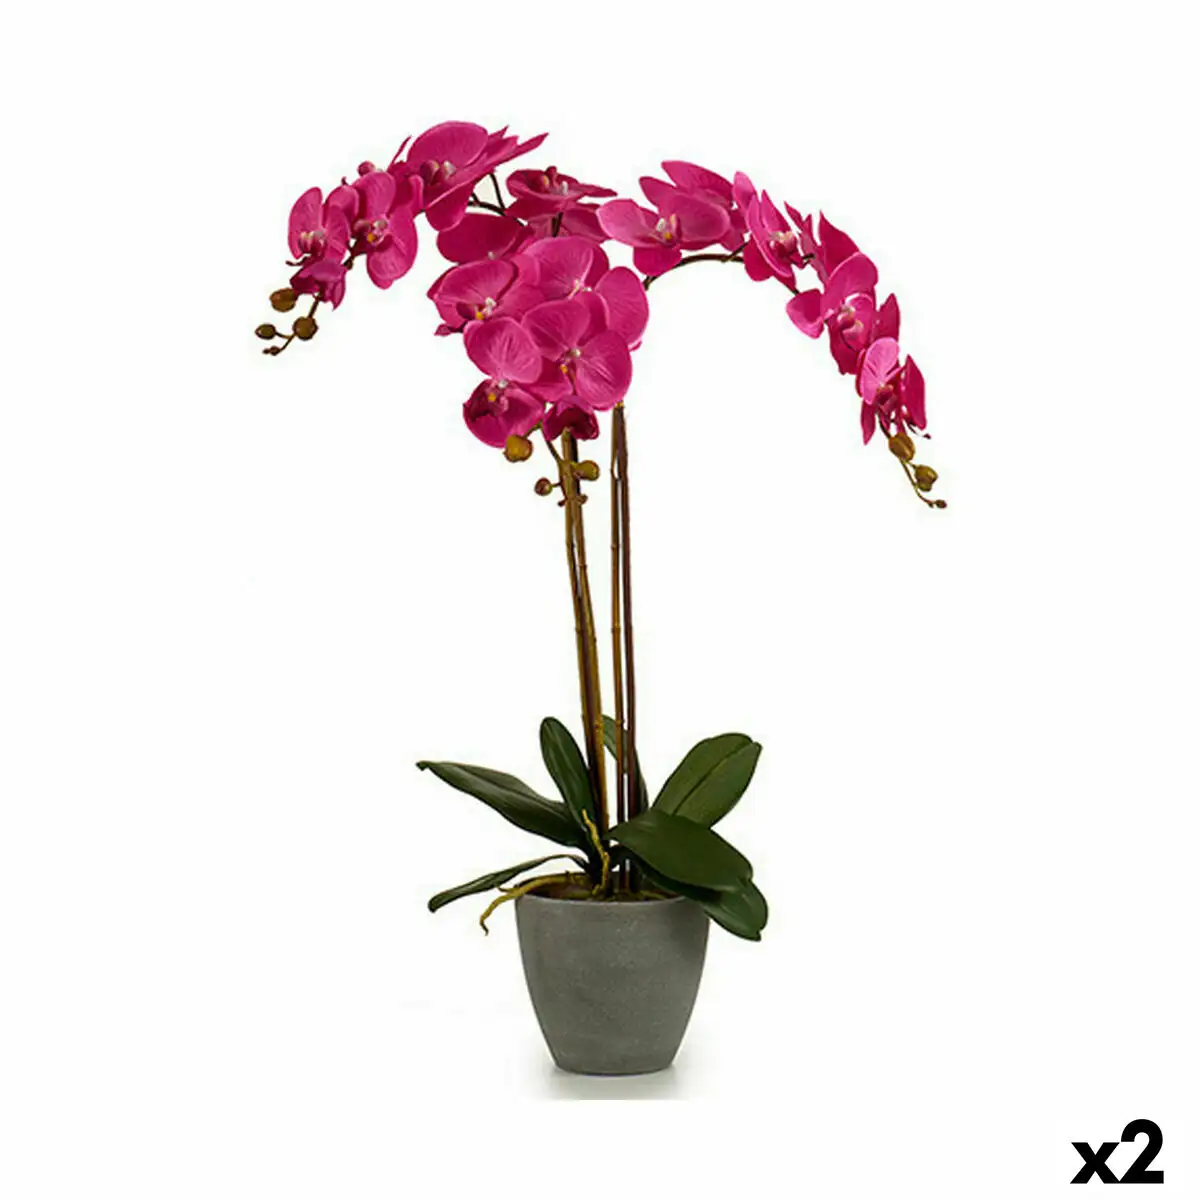 Plante decorative orchidee plastique 60 x 78 x 44 cm 2 unites _4680. Bienvenue chez DIAYTAR SENEGAL - Où Chaque Produit a son Histoire. Plongez dans notre sélection diversifiée et découvrez des articles qui racontent le riche patrimoine sénégalais.